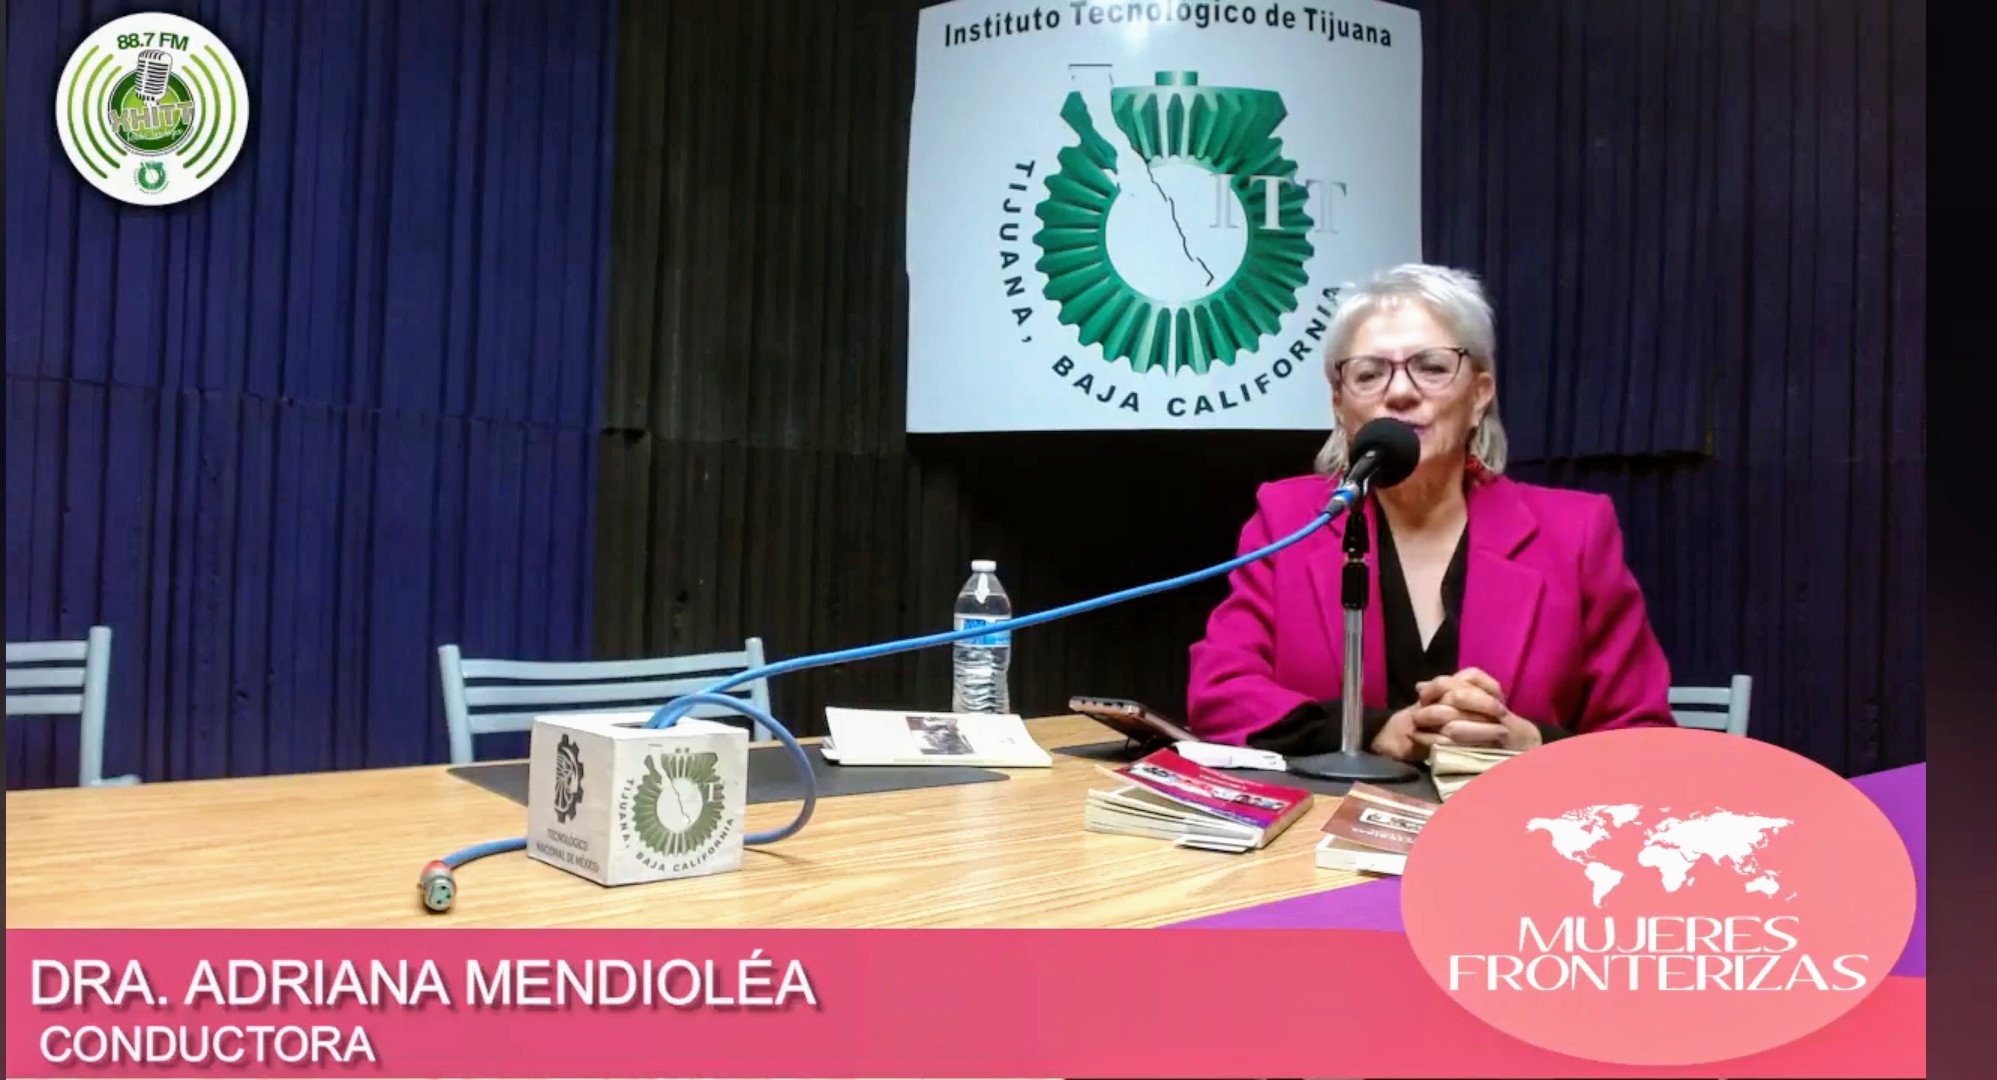 Conduciendo el Programa de Radio Mujeres Fronterizas en el 88.7 fm Radio<br>Tecnológico, la Doctora Adriana Mendioléa Martínez Presidente Fundadora de<br>Mujeres Fronterizas 21 diciembre 2023